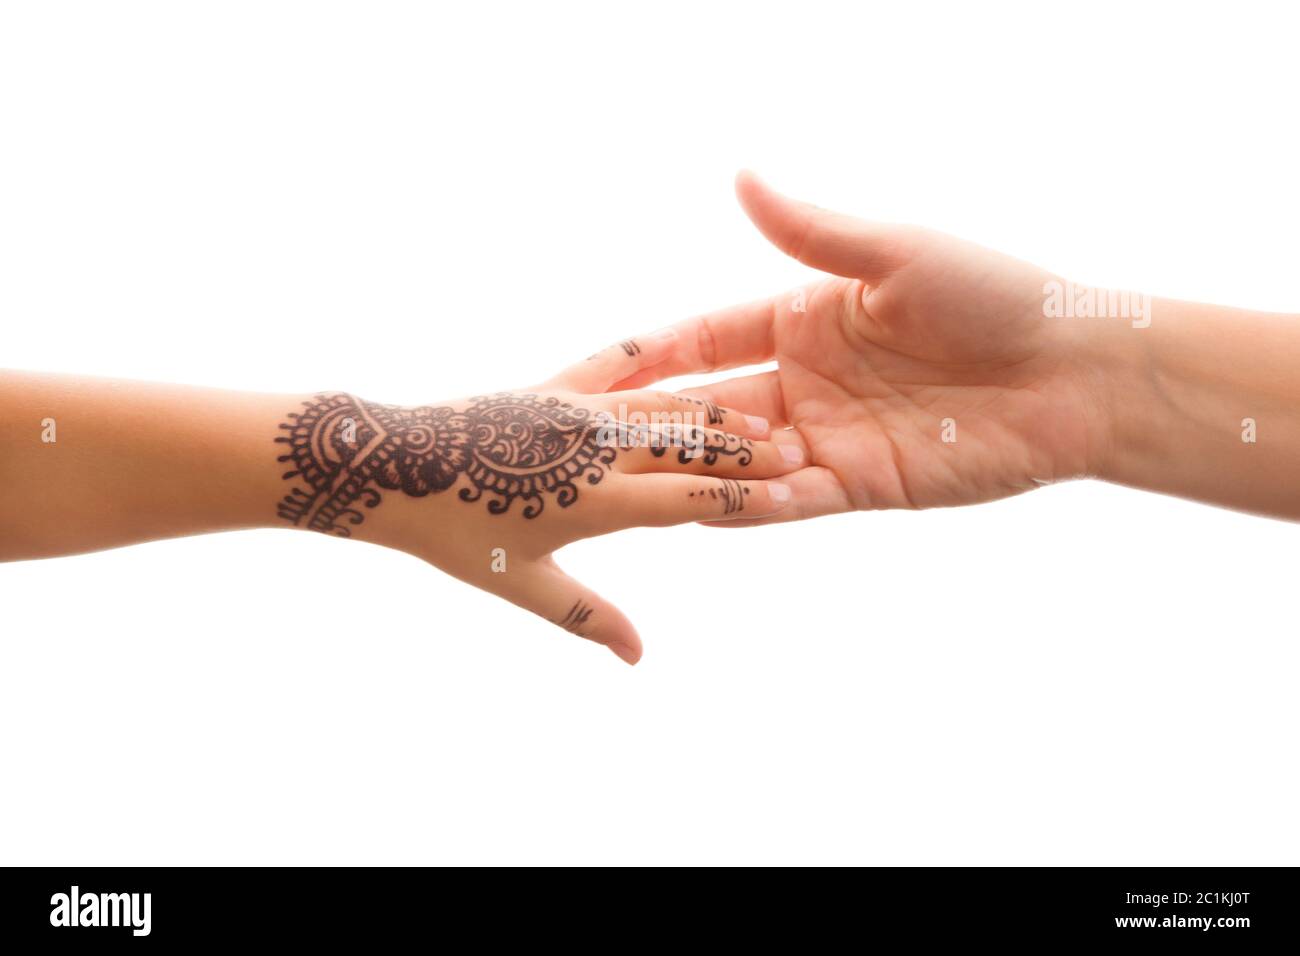 Henna-Ornamente Auf Mädchen Hand in Nähe Stockbild - Bild von hand